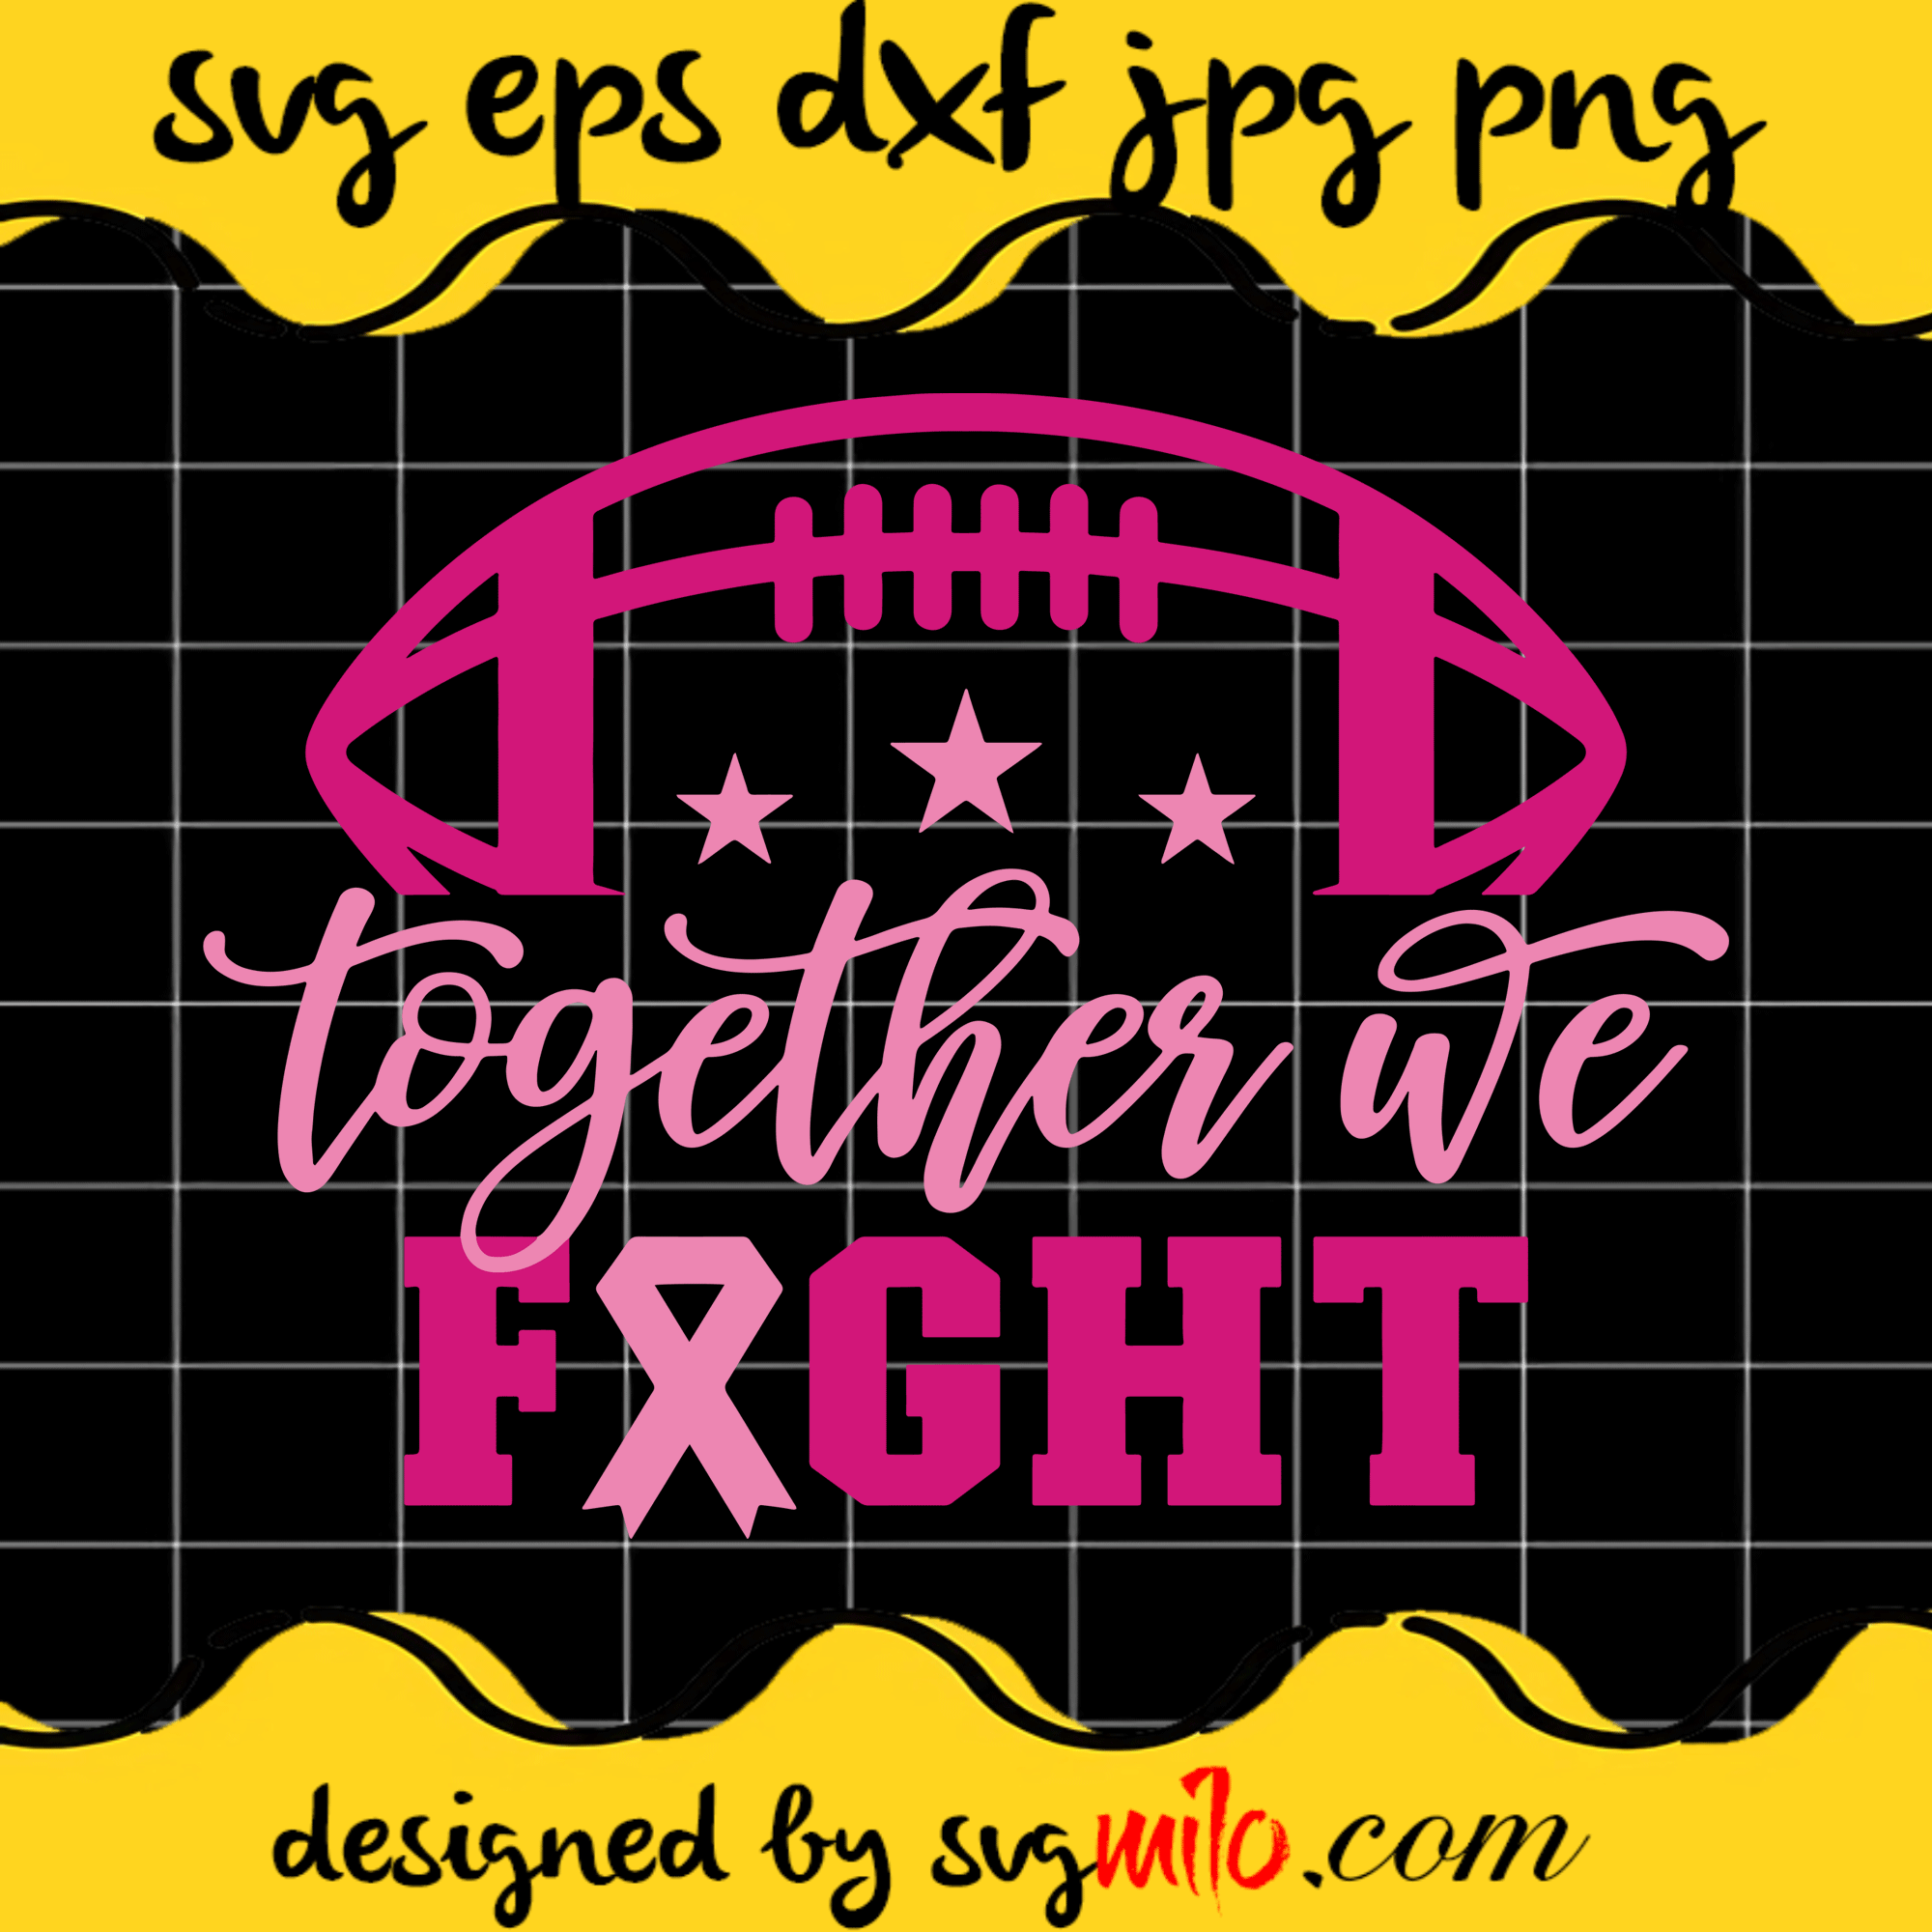 Together We Fight SVG